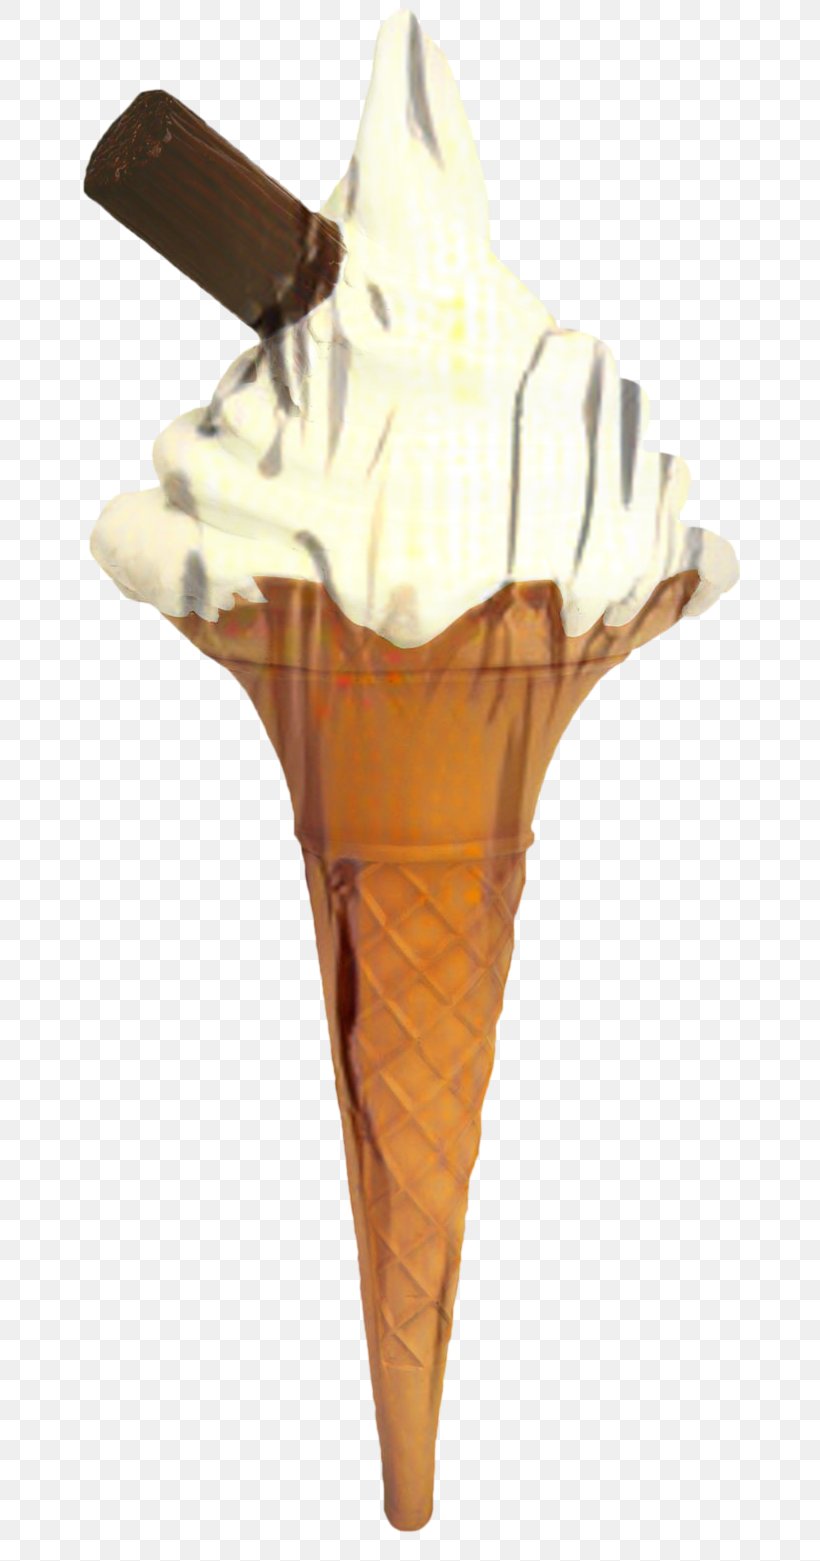 Ice Cream Cone Background, PNG, 726x1561px, Ice Cream, Chocolate Ice Cream, Cone, Cream, Cuisine Download Free